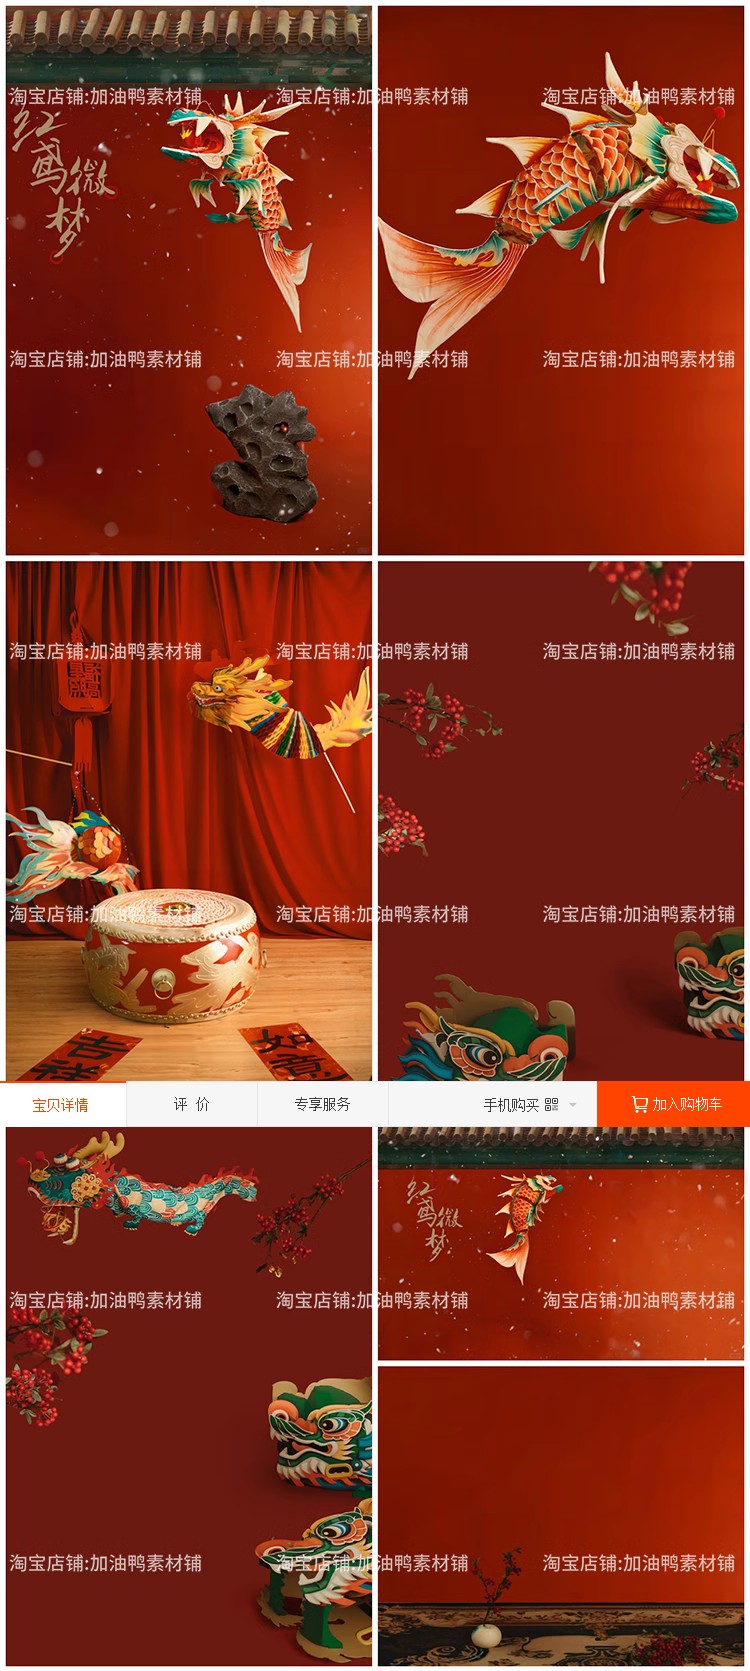 Y1642, Bộ 7 Psd Mẫu Vật Liệu Nền Thiết Kế ảnh Phong Cách Cổ Xưa Mừng Năm Mới Với Bức Tường đỏ, Cá Koi, Hanfu (2)